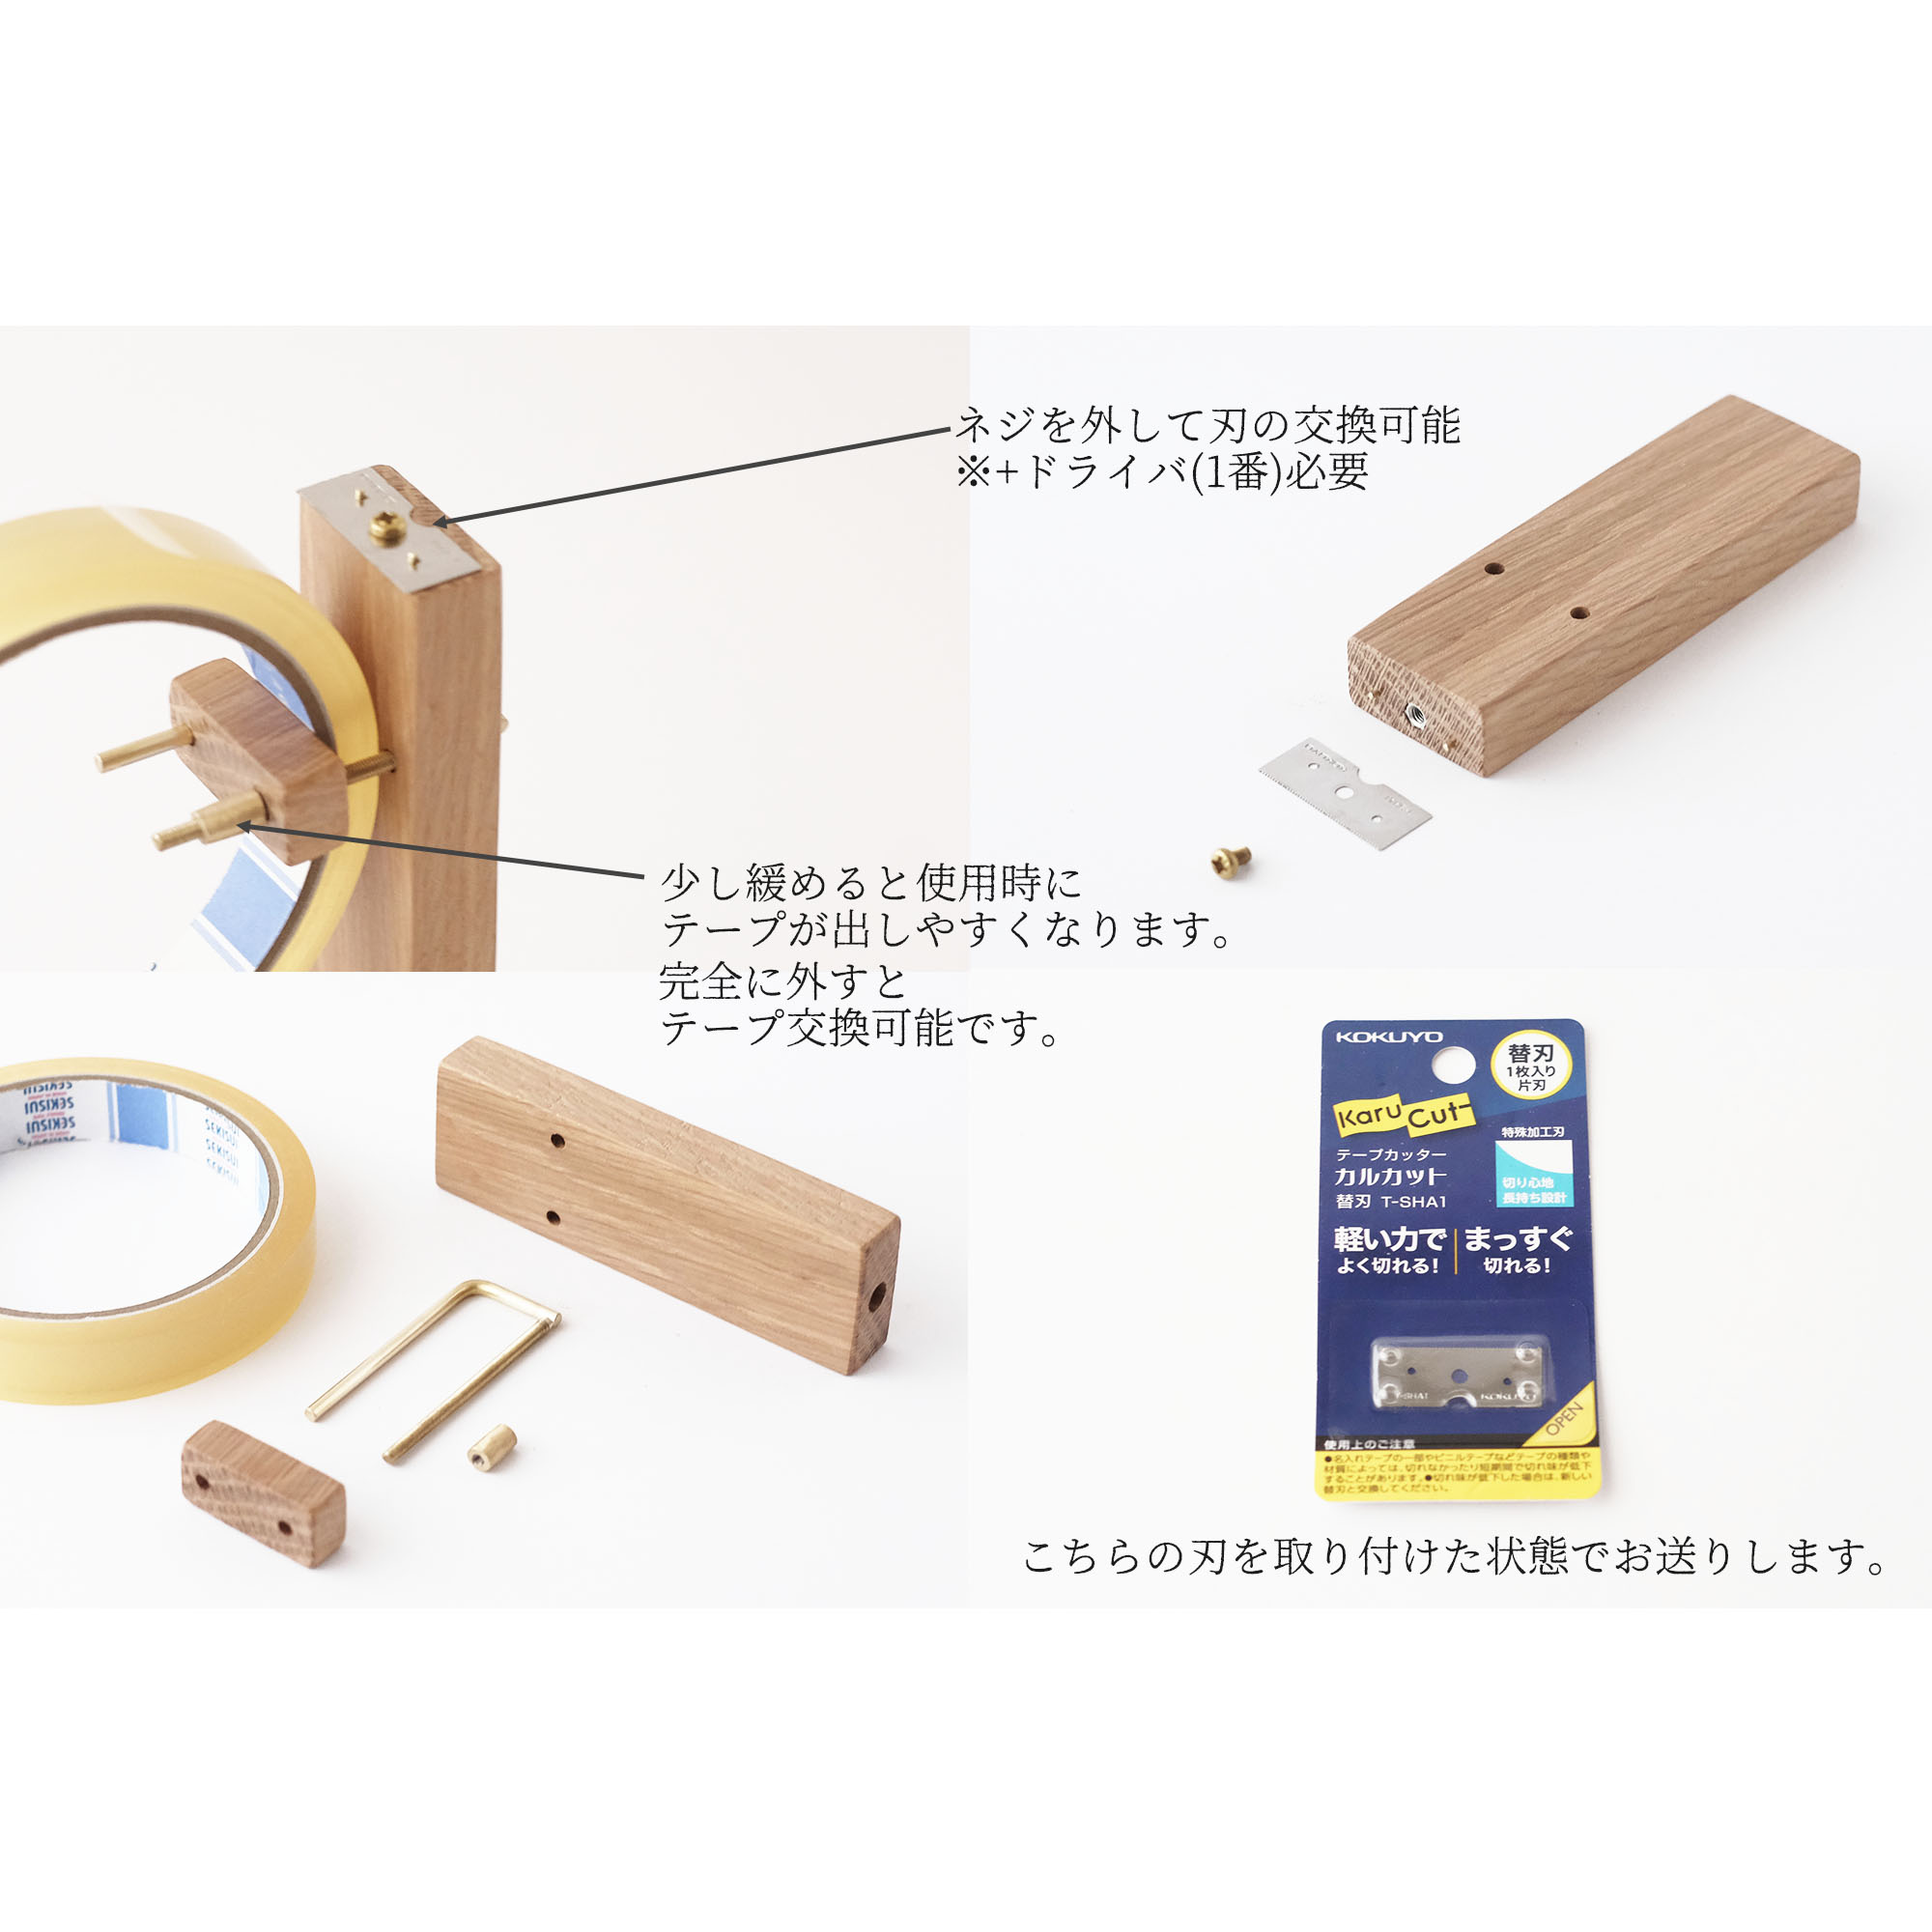 日本全国送料無料 コクヨ テープカッター カルカット用 替刃 T-SHA1